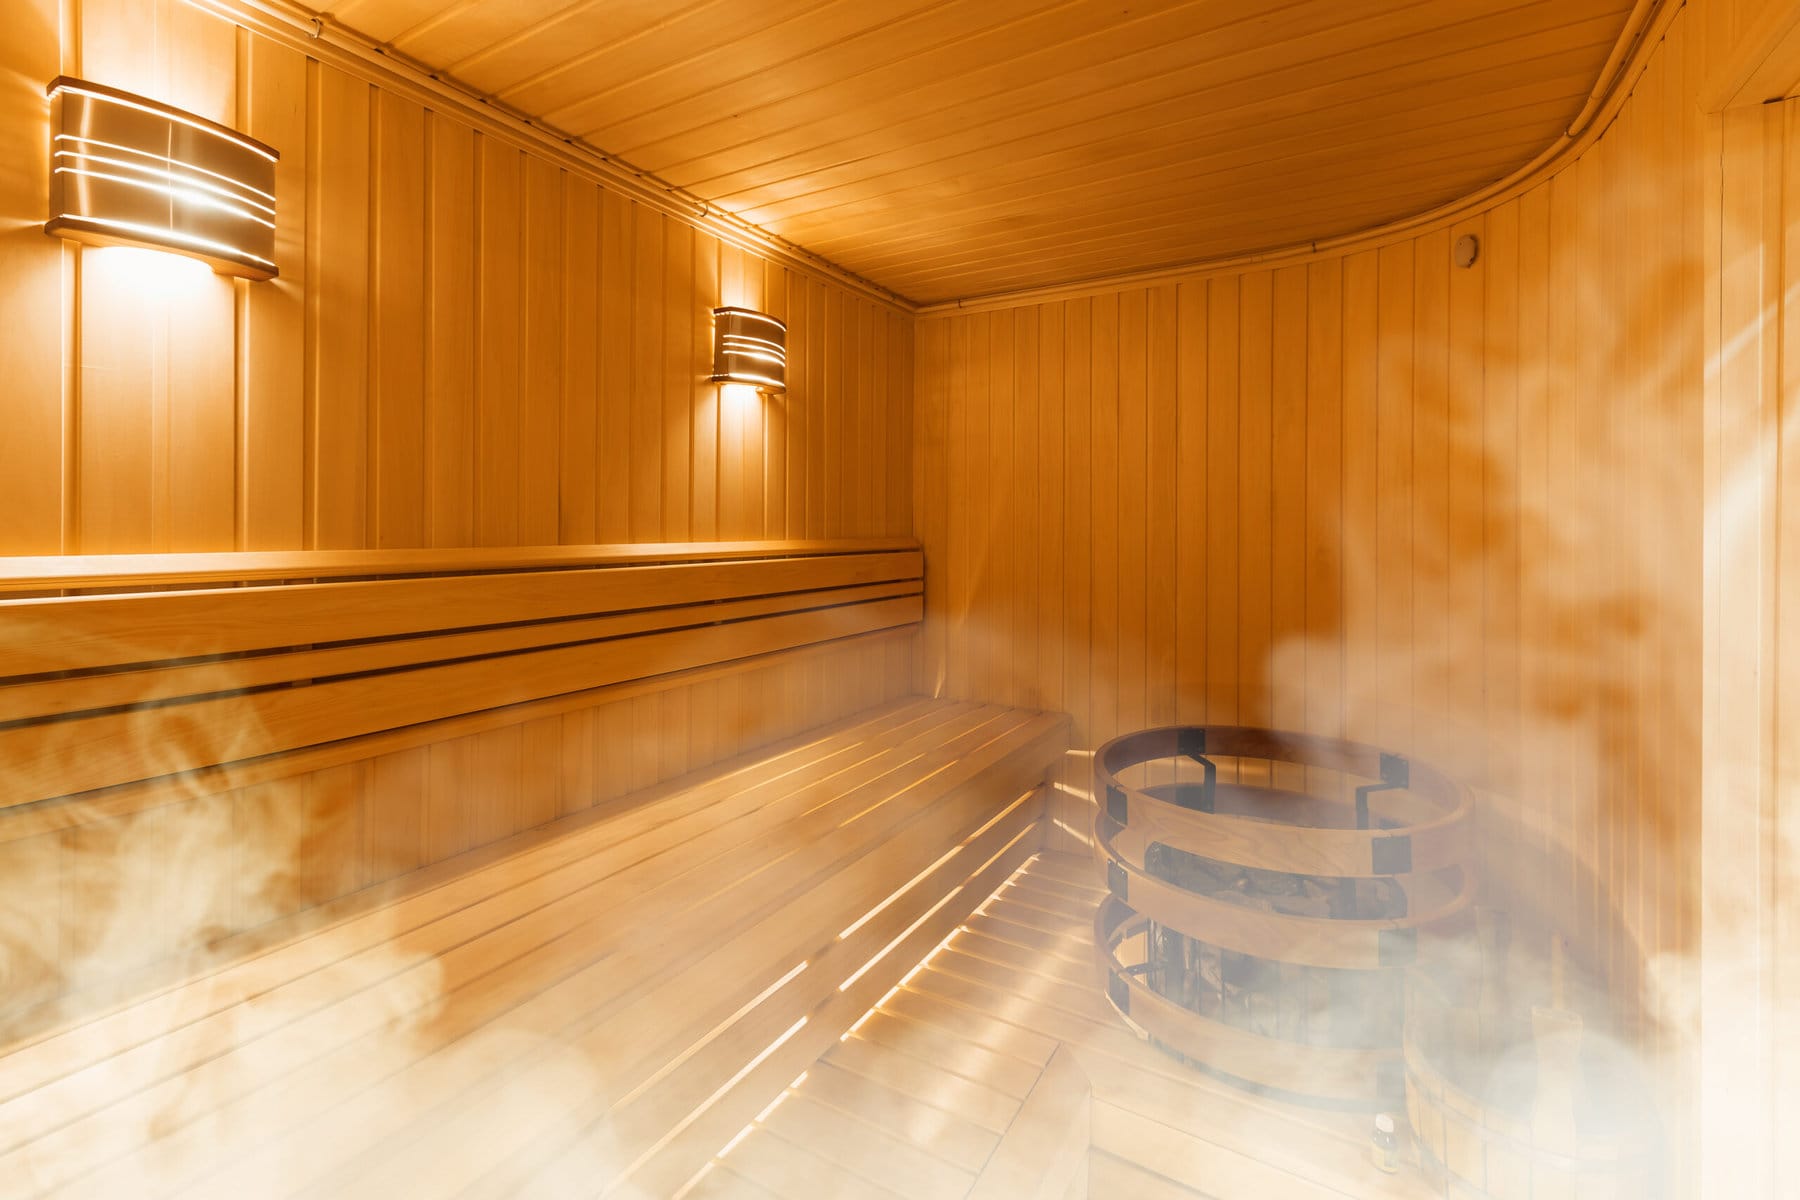 Kuinka pestä sauna ammattimaisesti?saunan pesu, Yrityssiivous ylläpitosiivous Toimistosiivous tampere toimitilasiivous siivouspalvelu siivouspalvelut, toimistosiivous Pk-seutu, toimistosiivous päkaupunkiseutu, toimistosiivous lahti toimistosiivous Tampere, toimistosiivous Turku